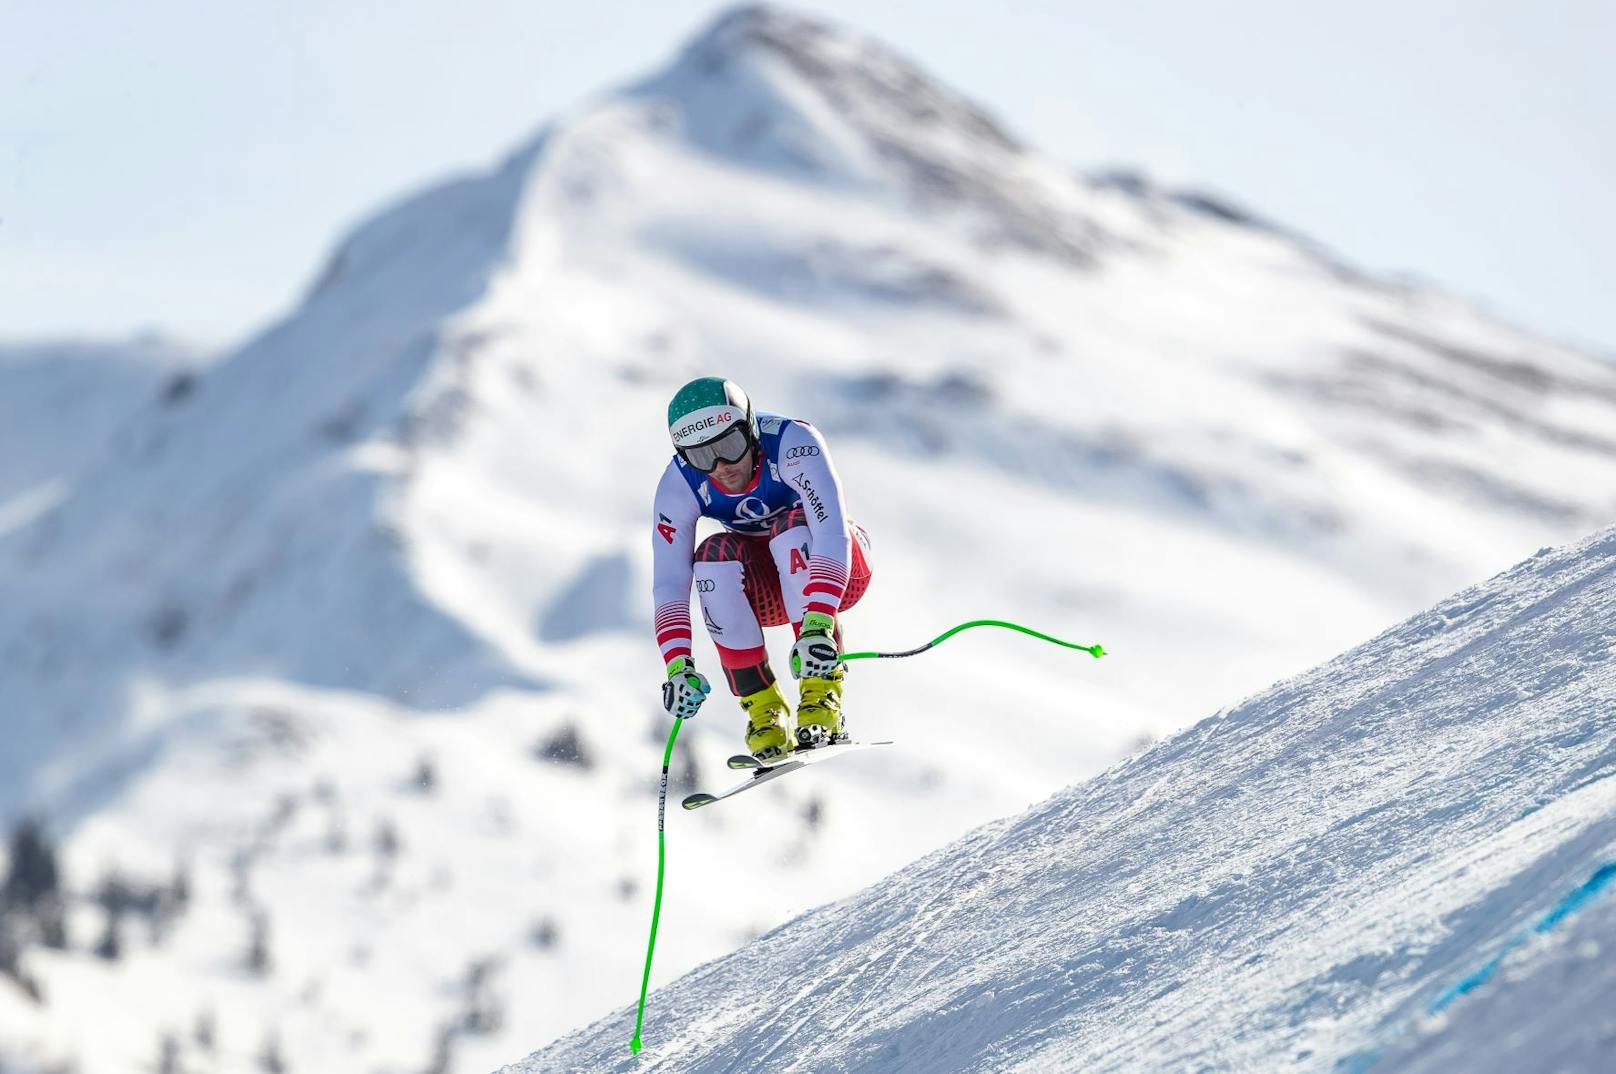 A1 ist offizieller Hauptsponsor der FIS Alpine Ski Weltmeisterschaften 2023 in Courchevel/Méribel sowie der Heim-WM 2025 in Saalbach.